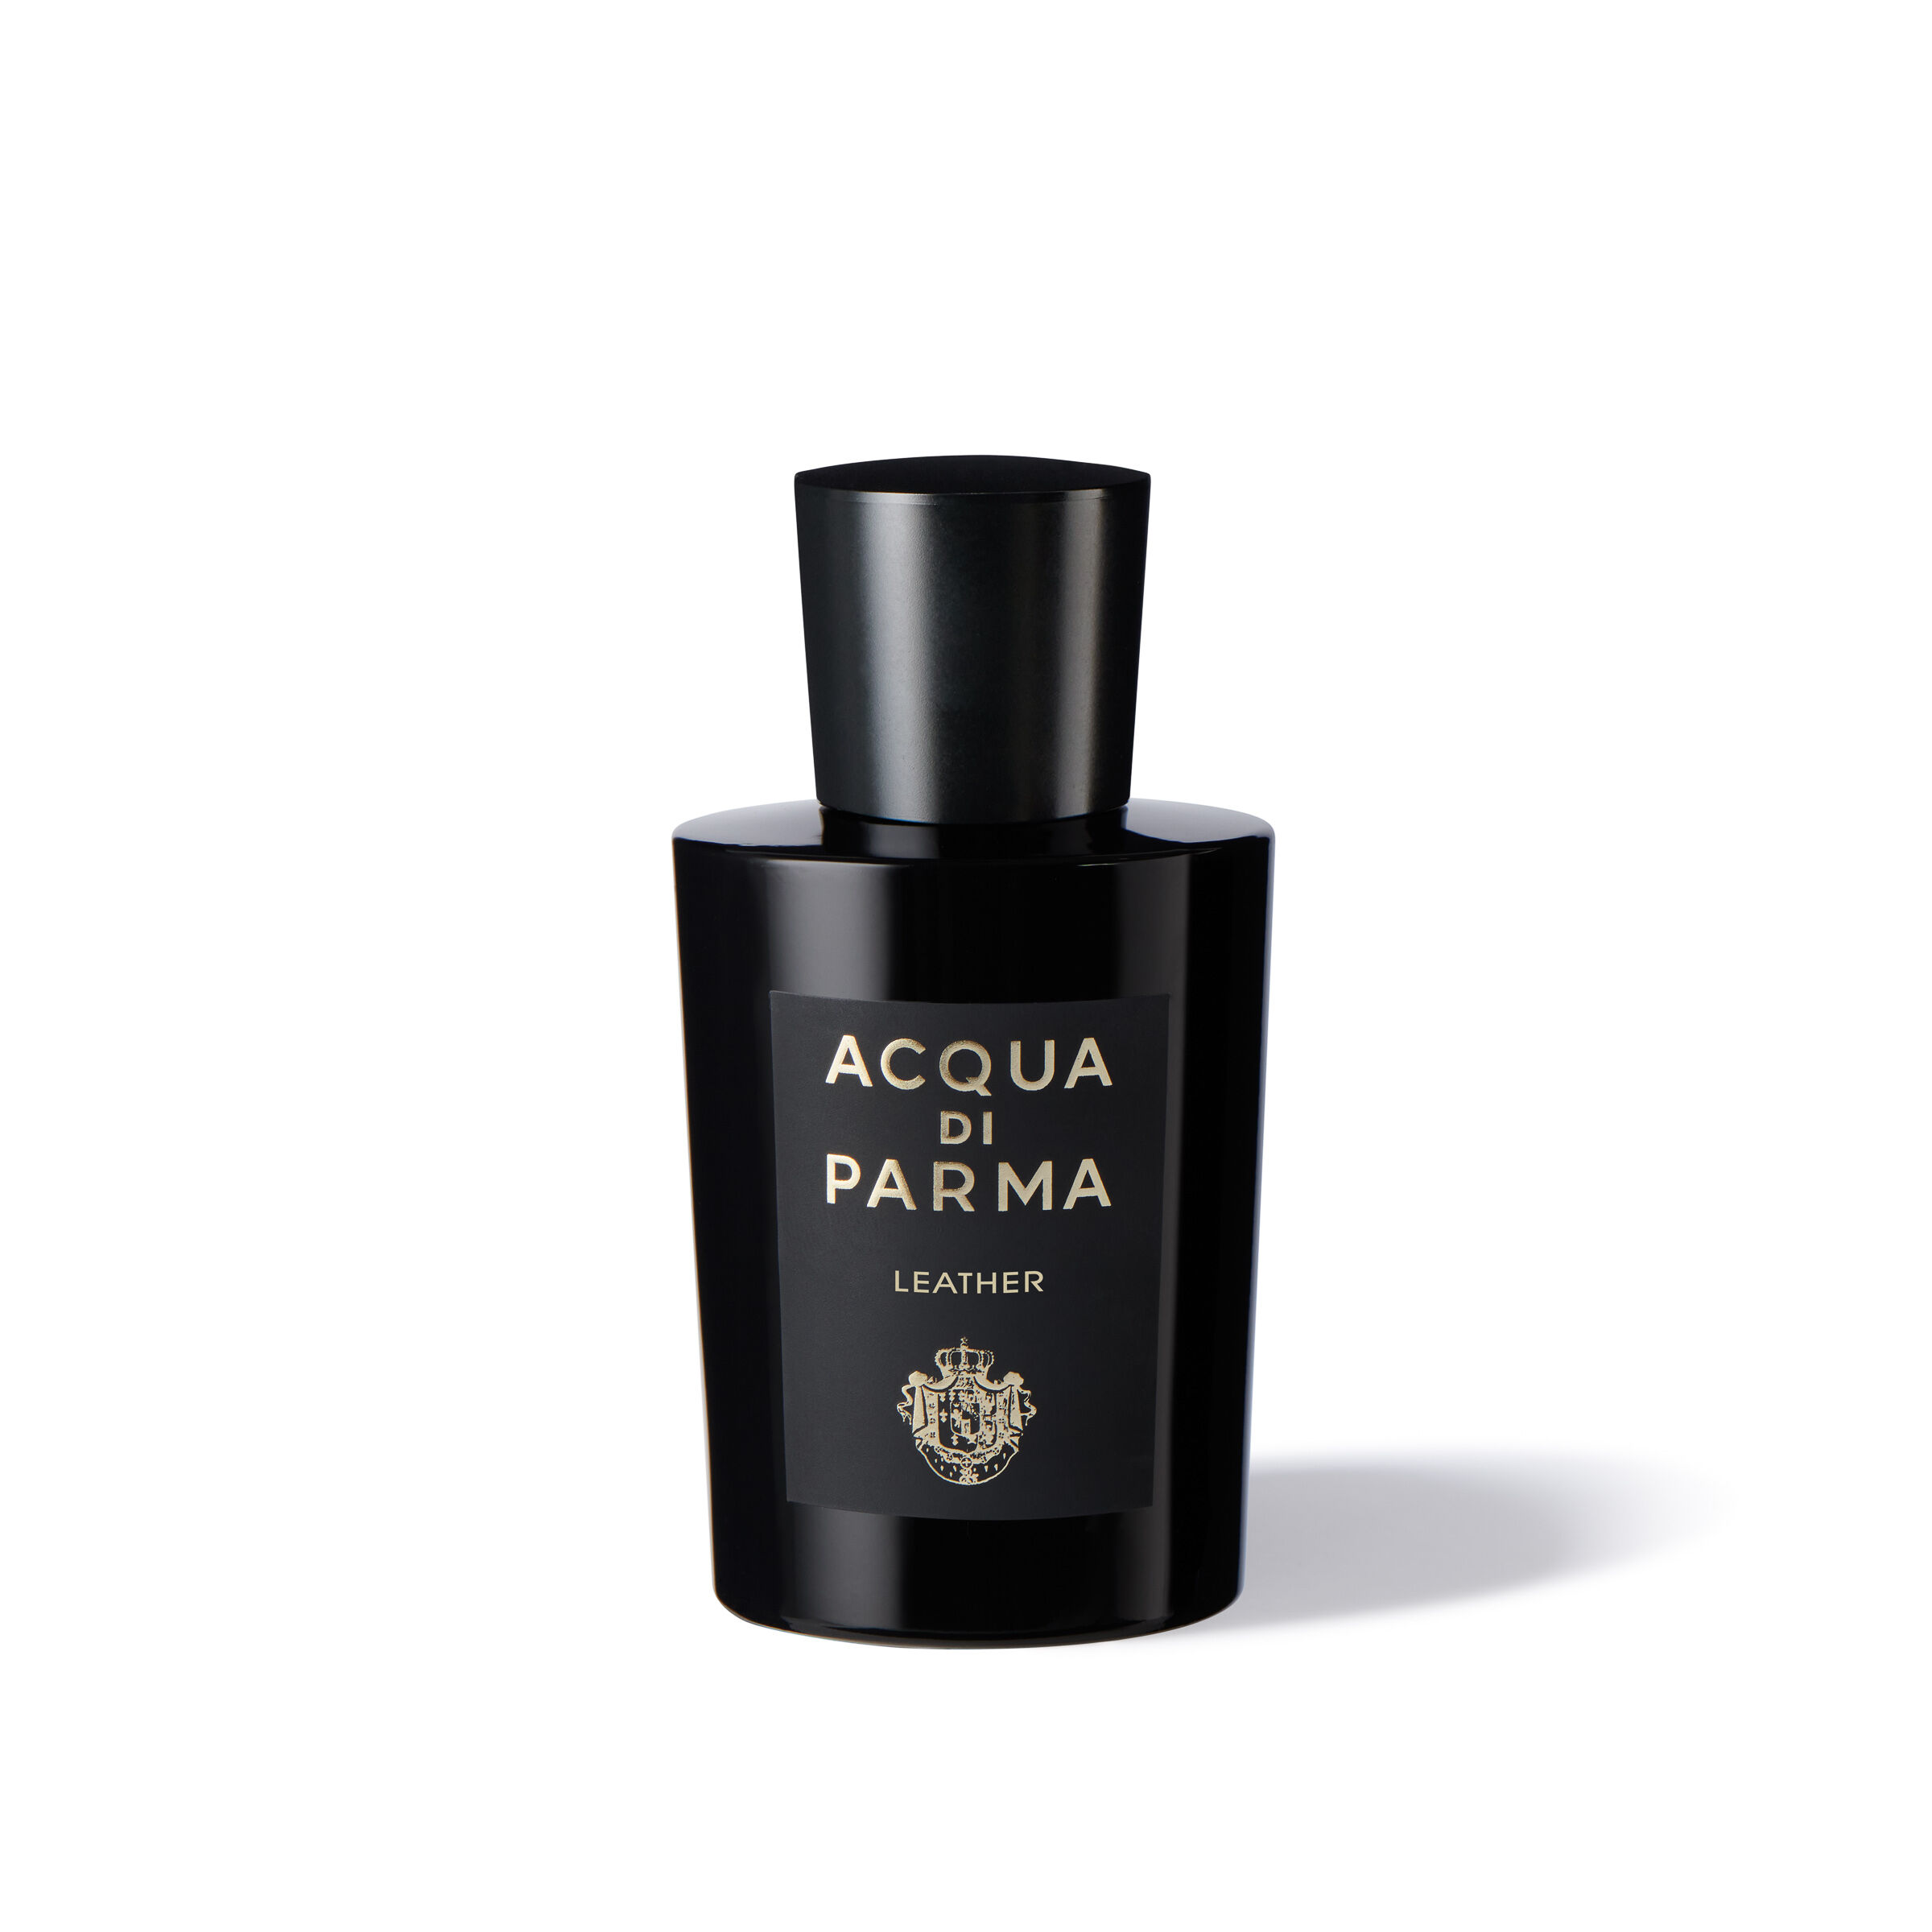 Leather EAU DE PARFUM - Acqua di Parma